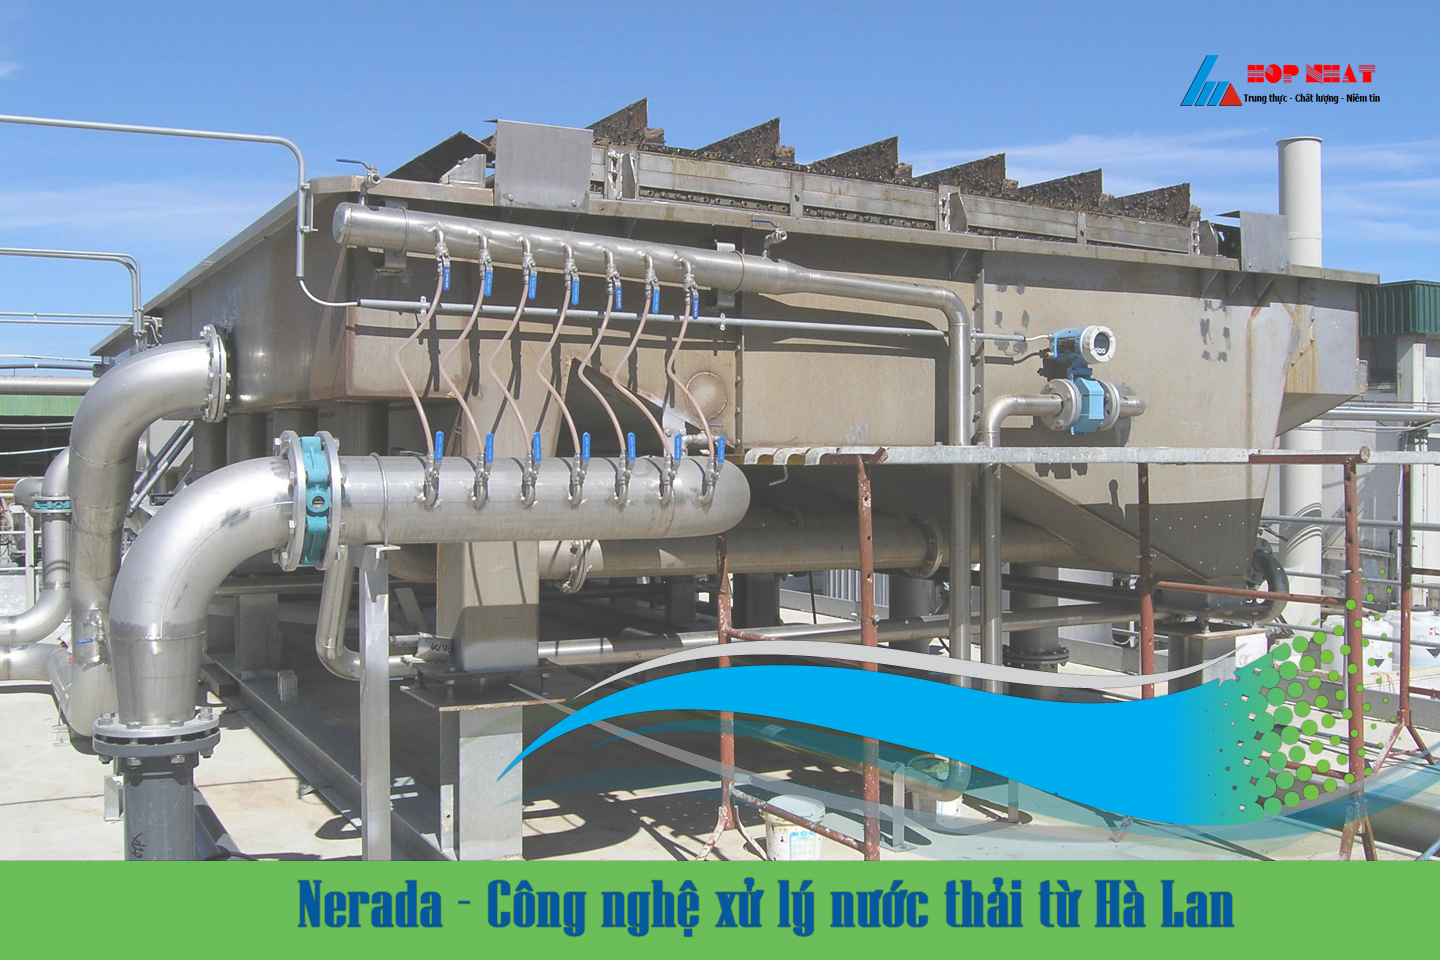 Nerada - Công nghệ xử lý nước thải từ Hà Lan